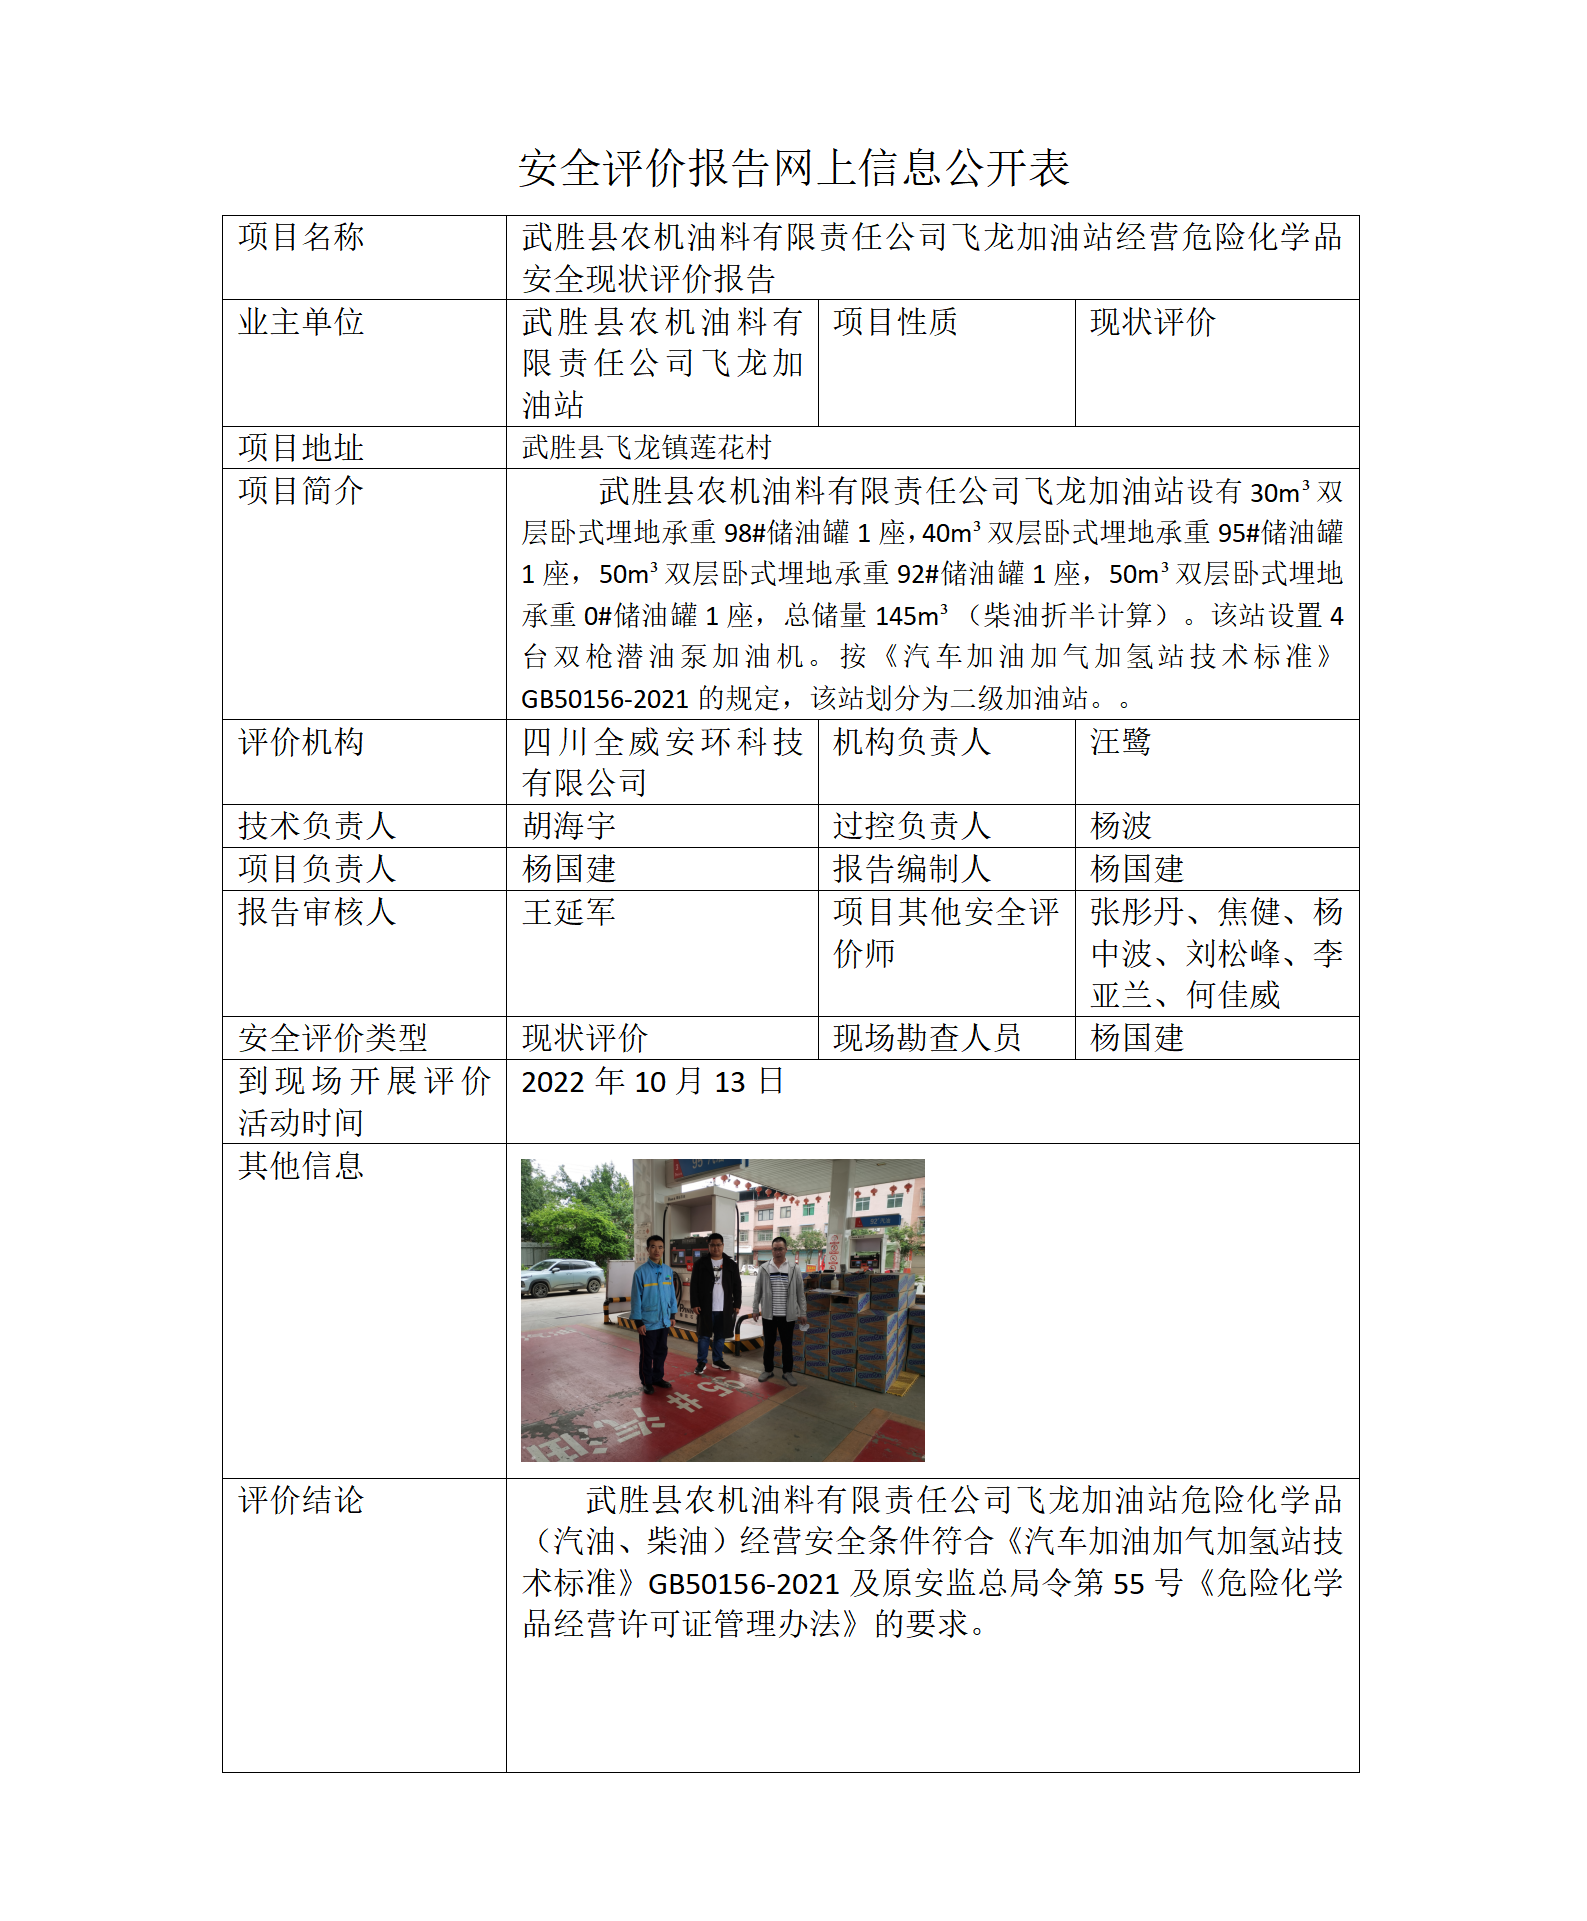 武胜县农机油料有限责任公司飞龙加油站经营危险化学品安全现状评价